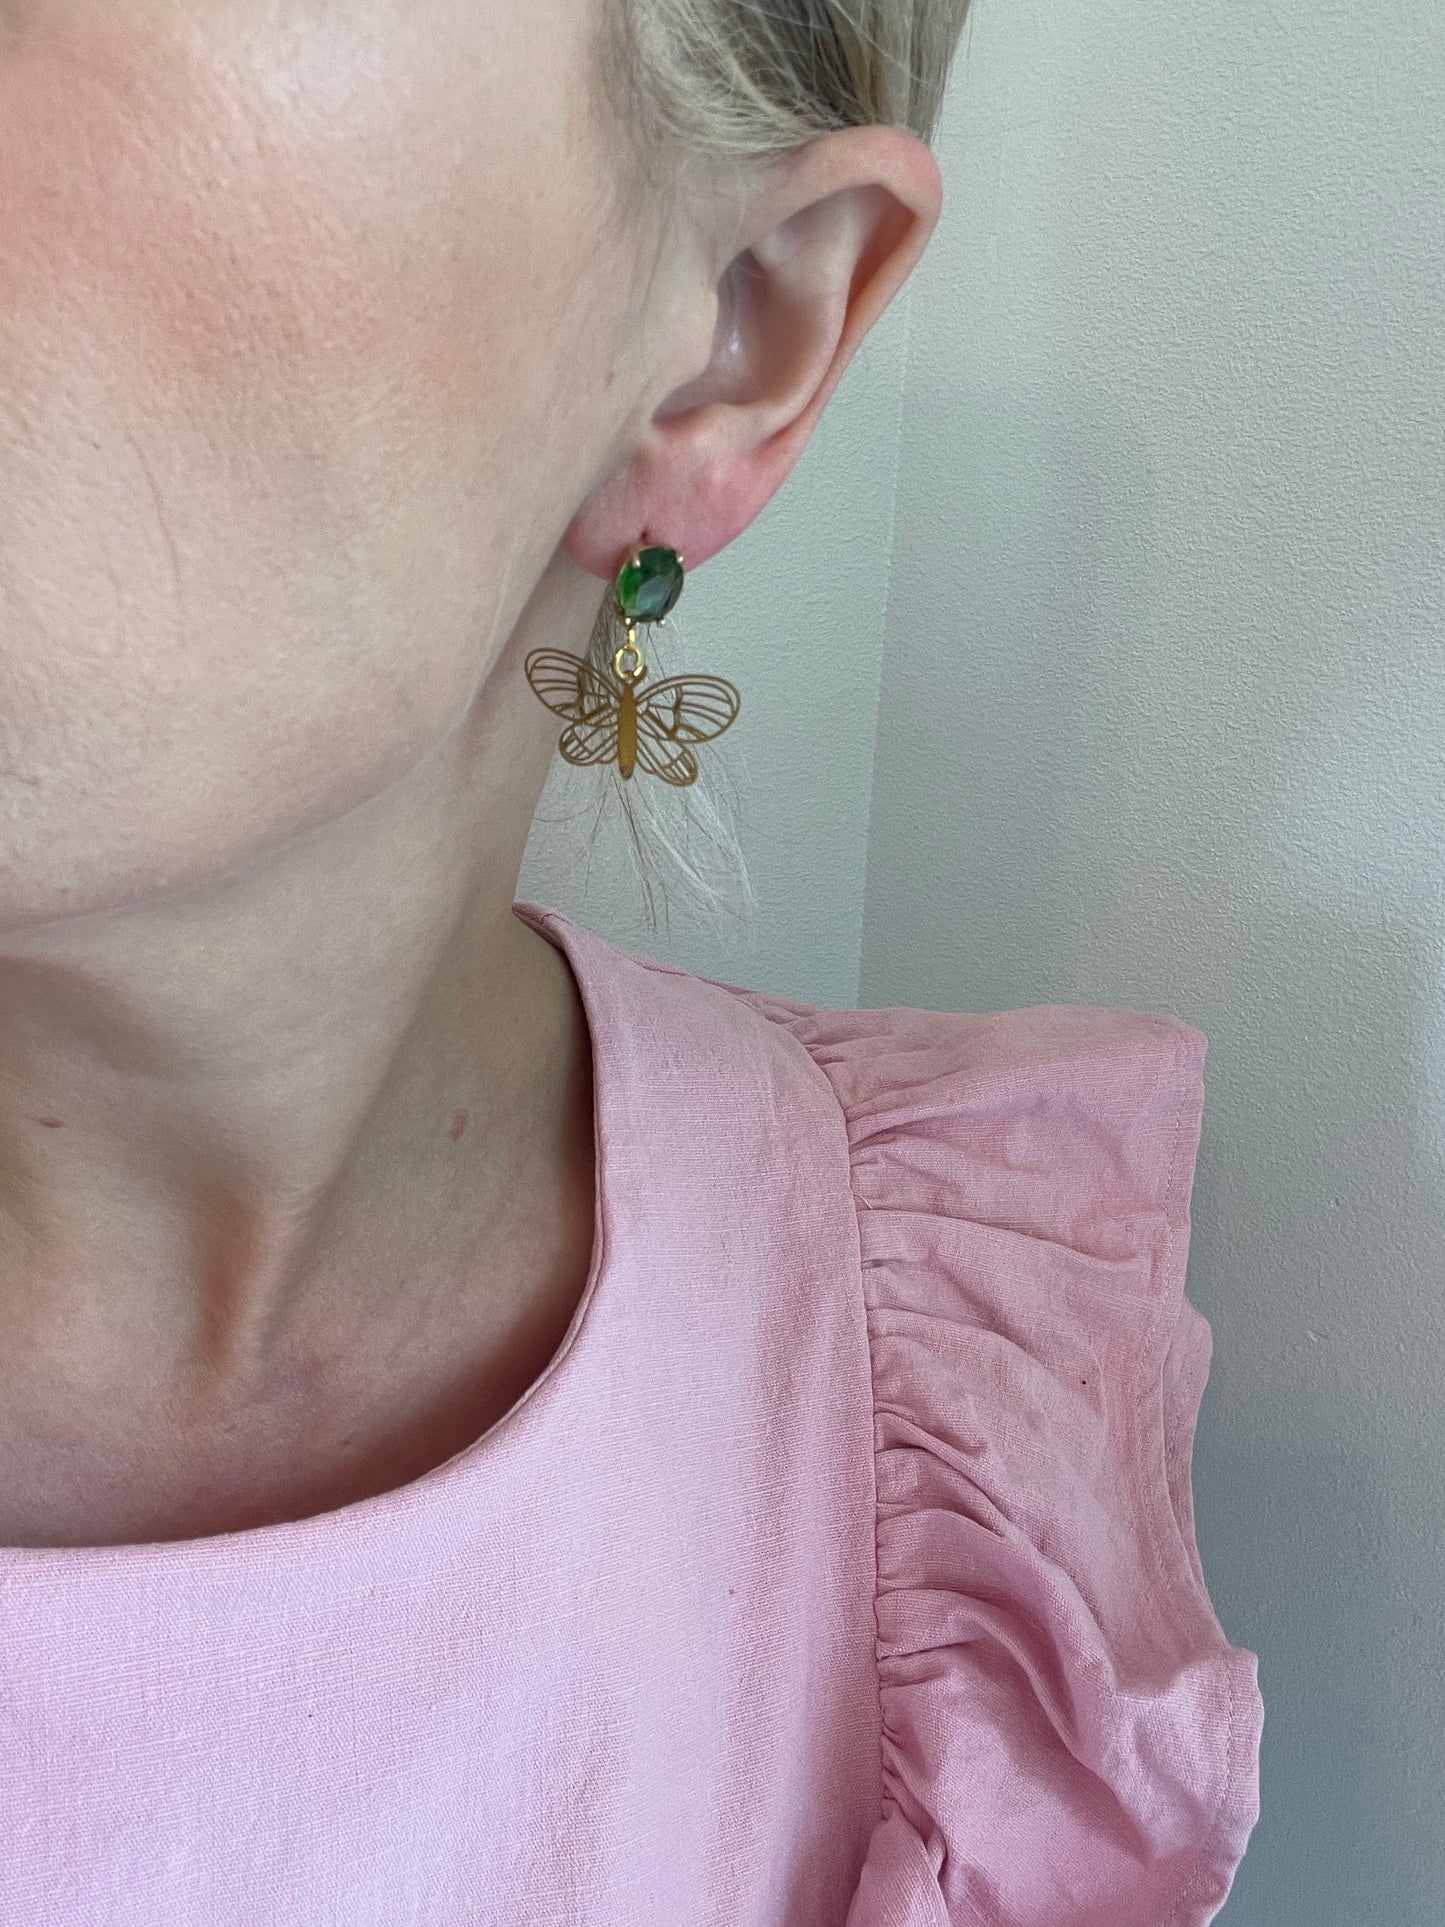 Green Dragonfly Earrings